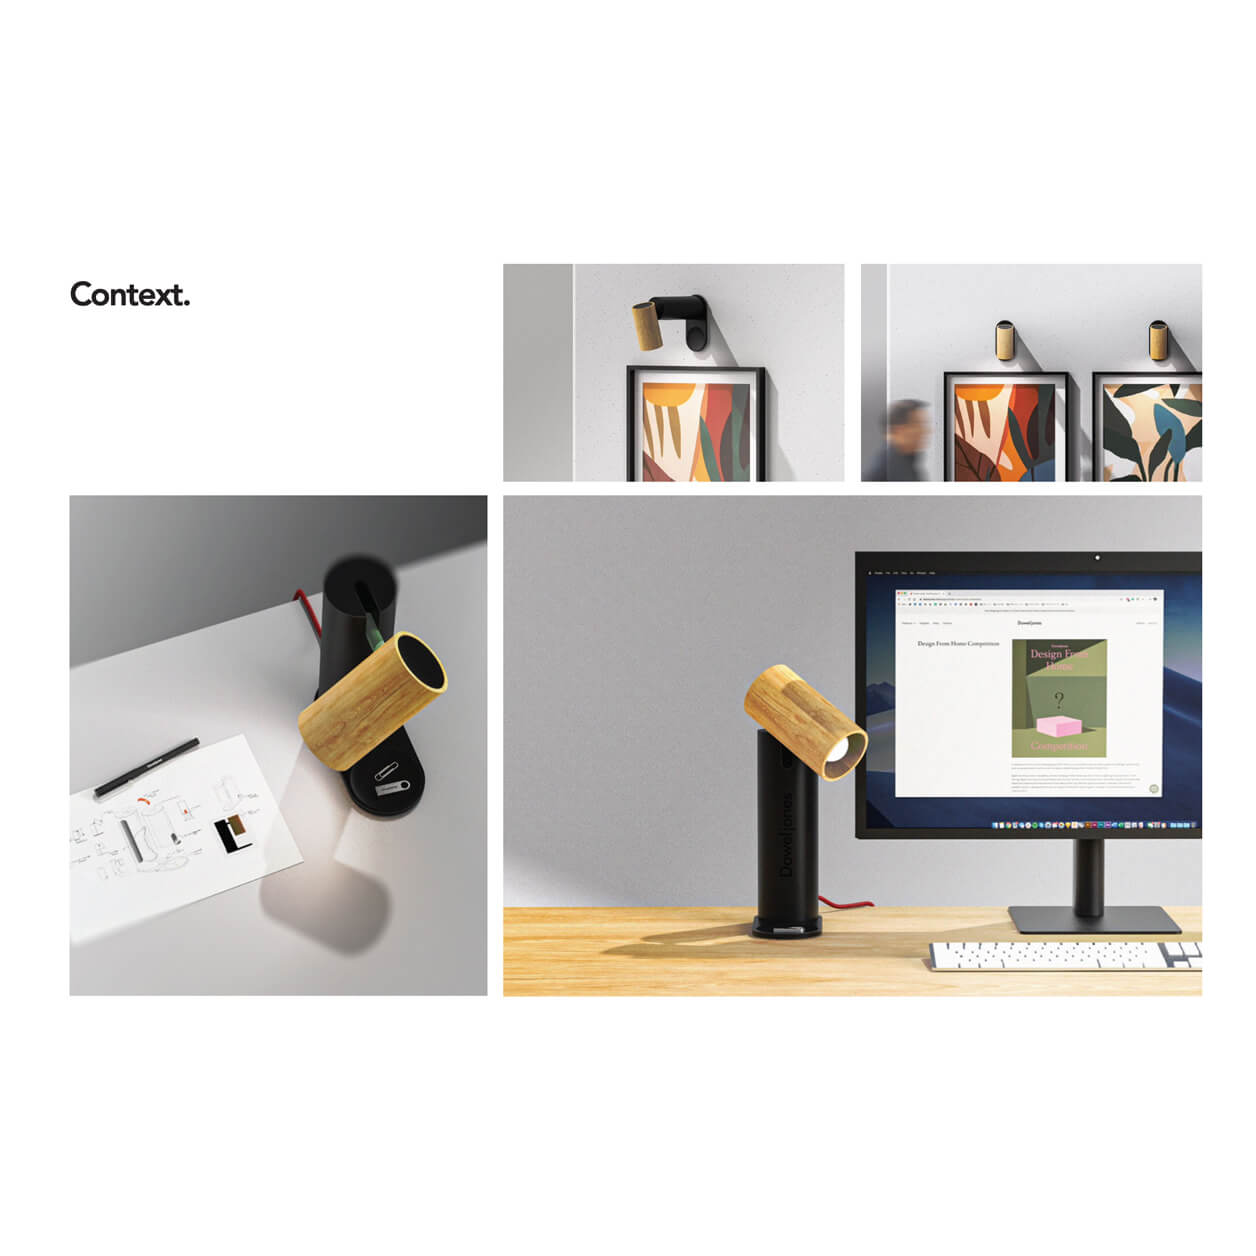 Context-images-desk-lamp